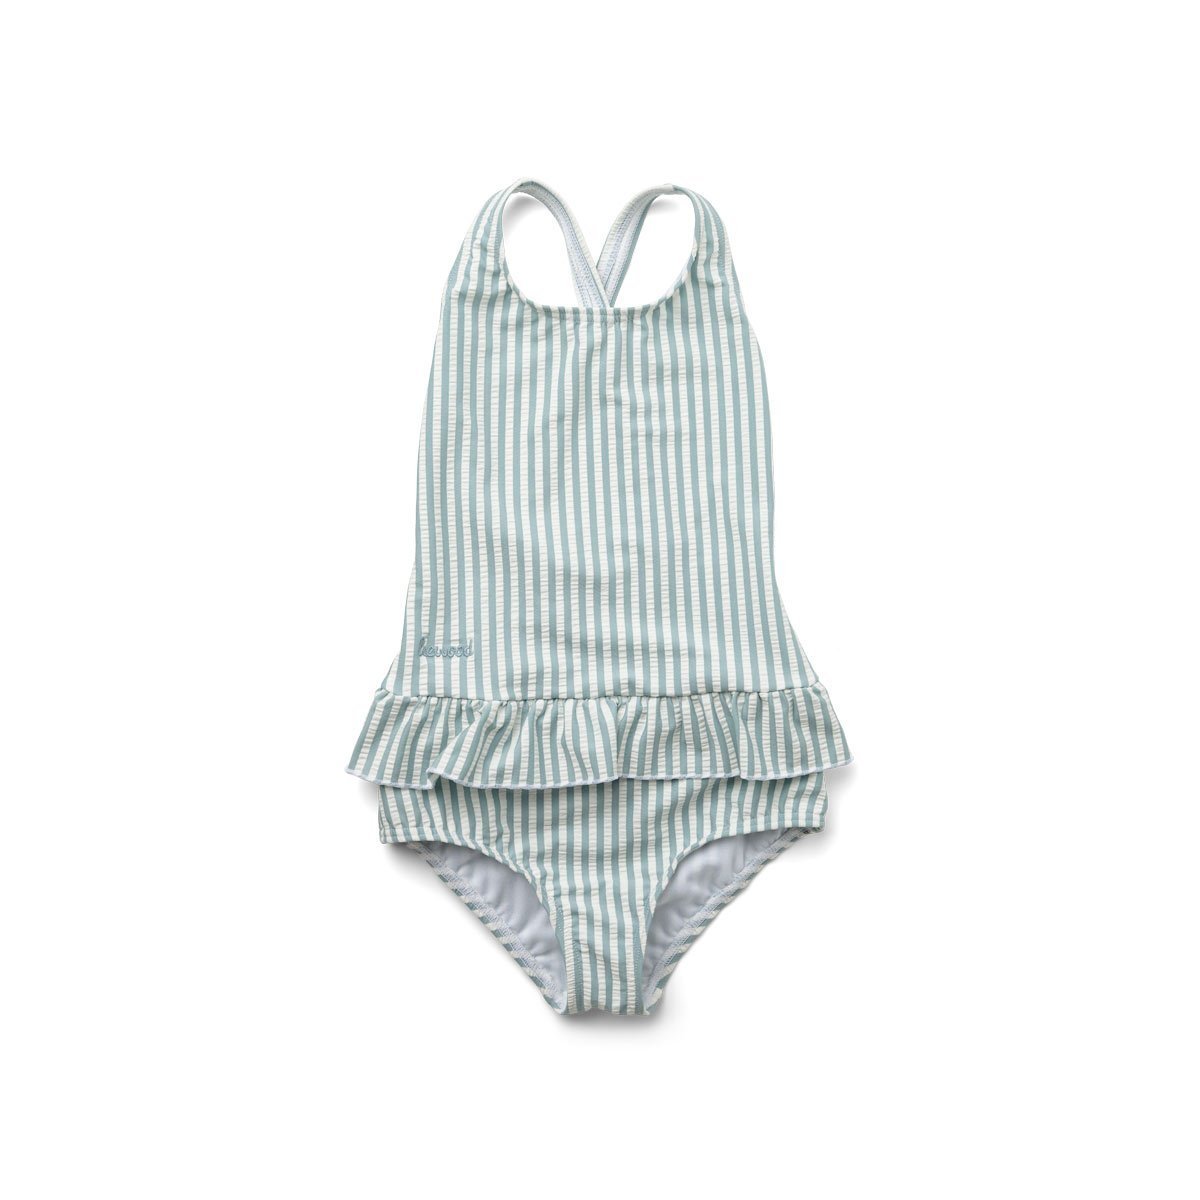 Liewood Amara Seersucker Swimsuit in Yarn Dye Sea Blue/White Stripe - Scandibørn